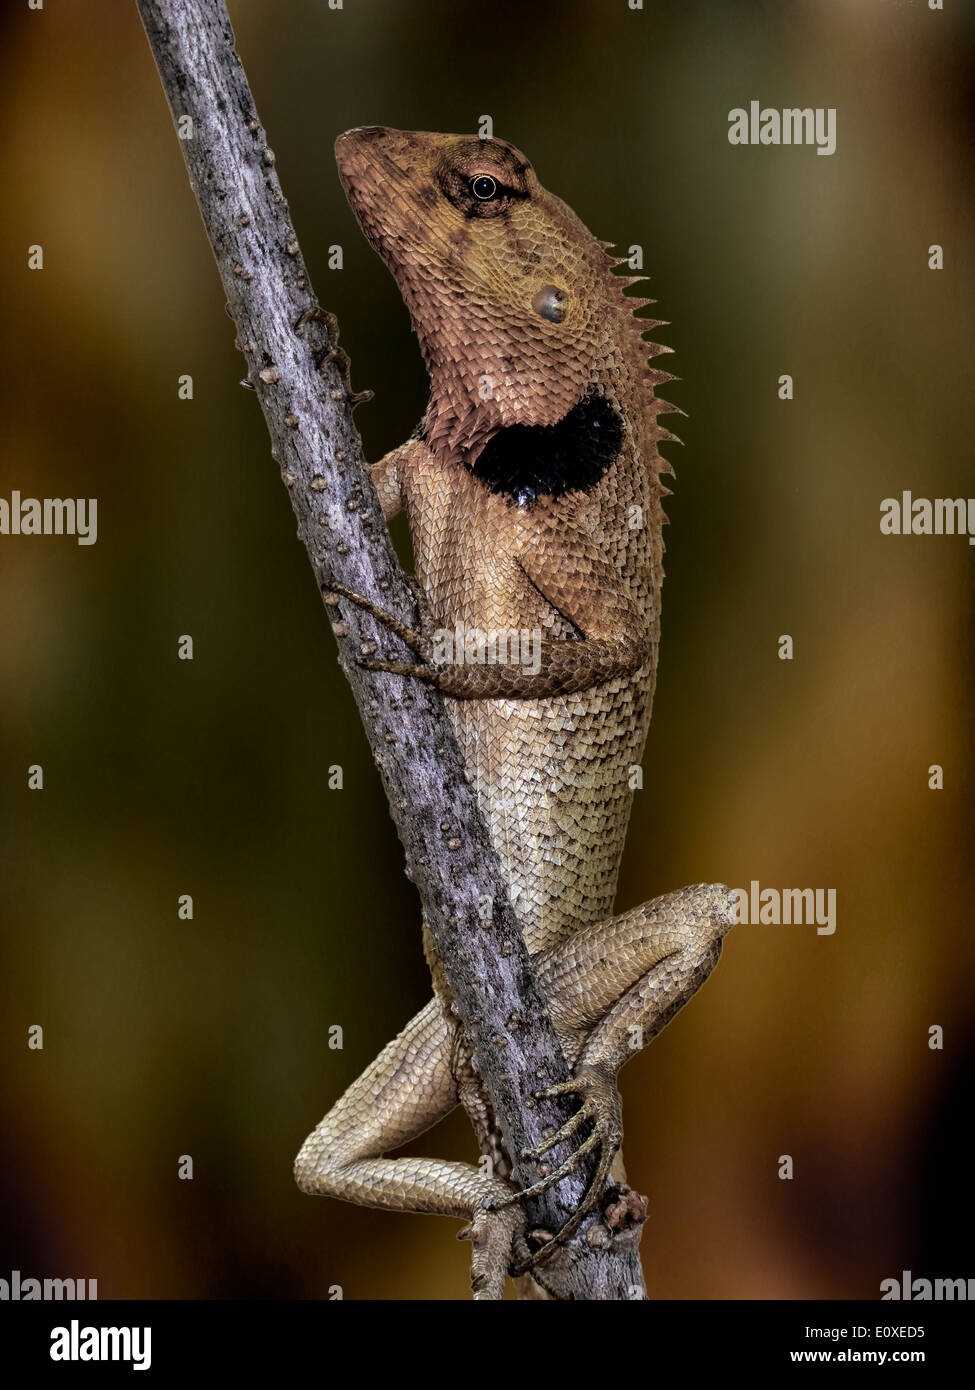 Lizard (Calotes versicolor) Thailand S. E. Asia Stock Photo